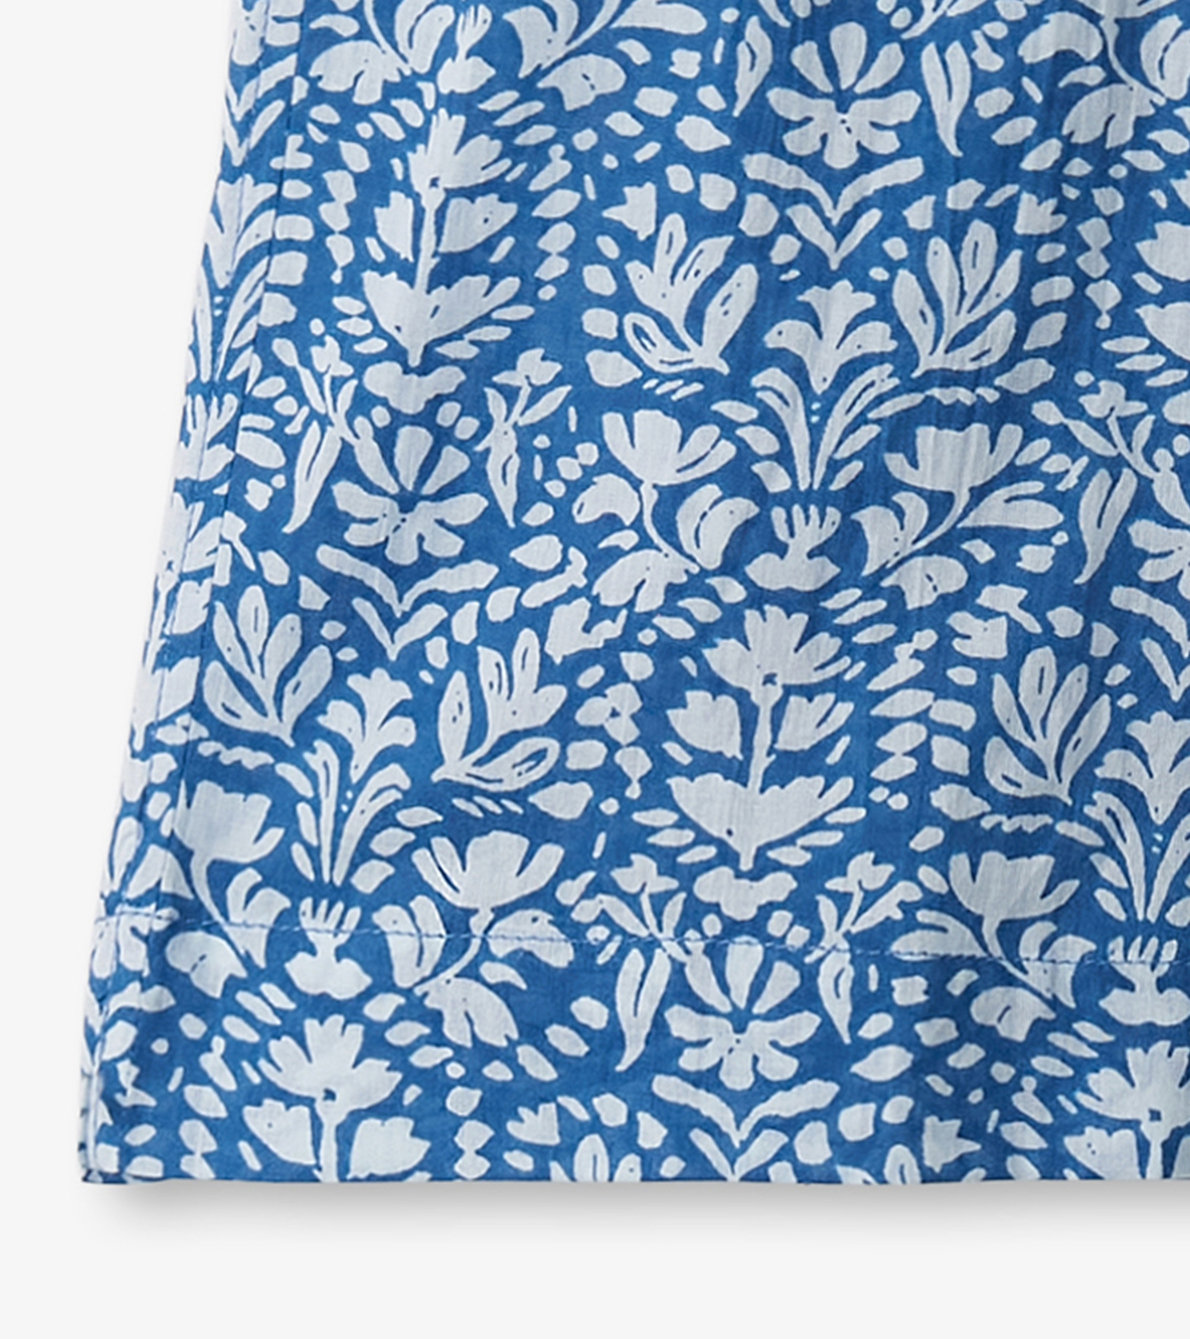 Agrandir l'image de Jupe-culotte à jambe large – Motifs floraux créés par shibori